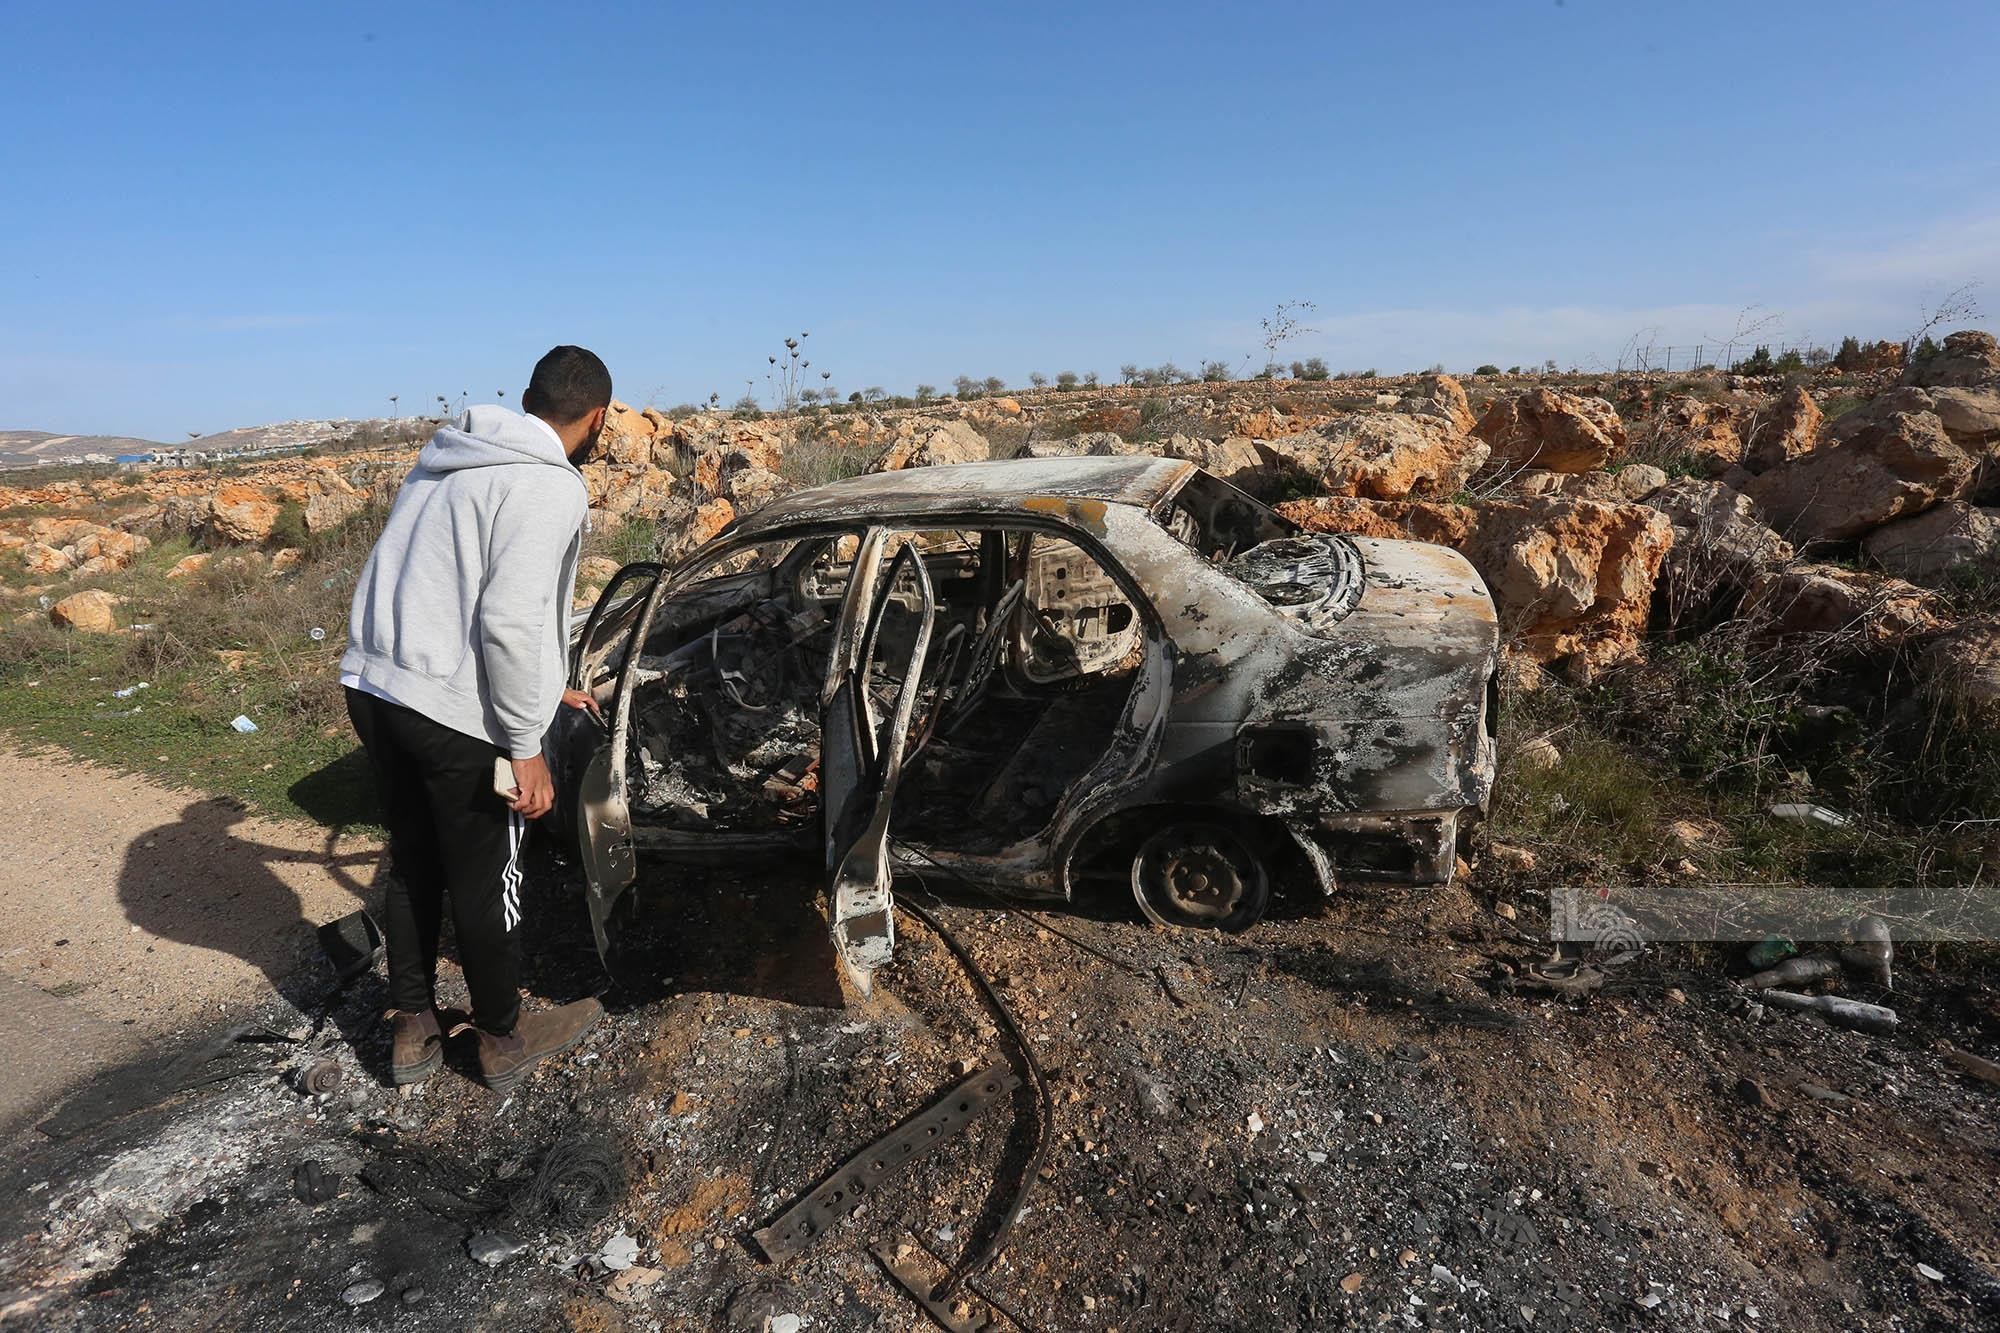 مستوطنون يحرقون ست مركبات فلسطينية بشكل كامل بين بلدتي عقربا ومجدل بني فاضل قرب نابلس 9(1).jpg